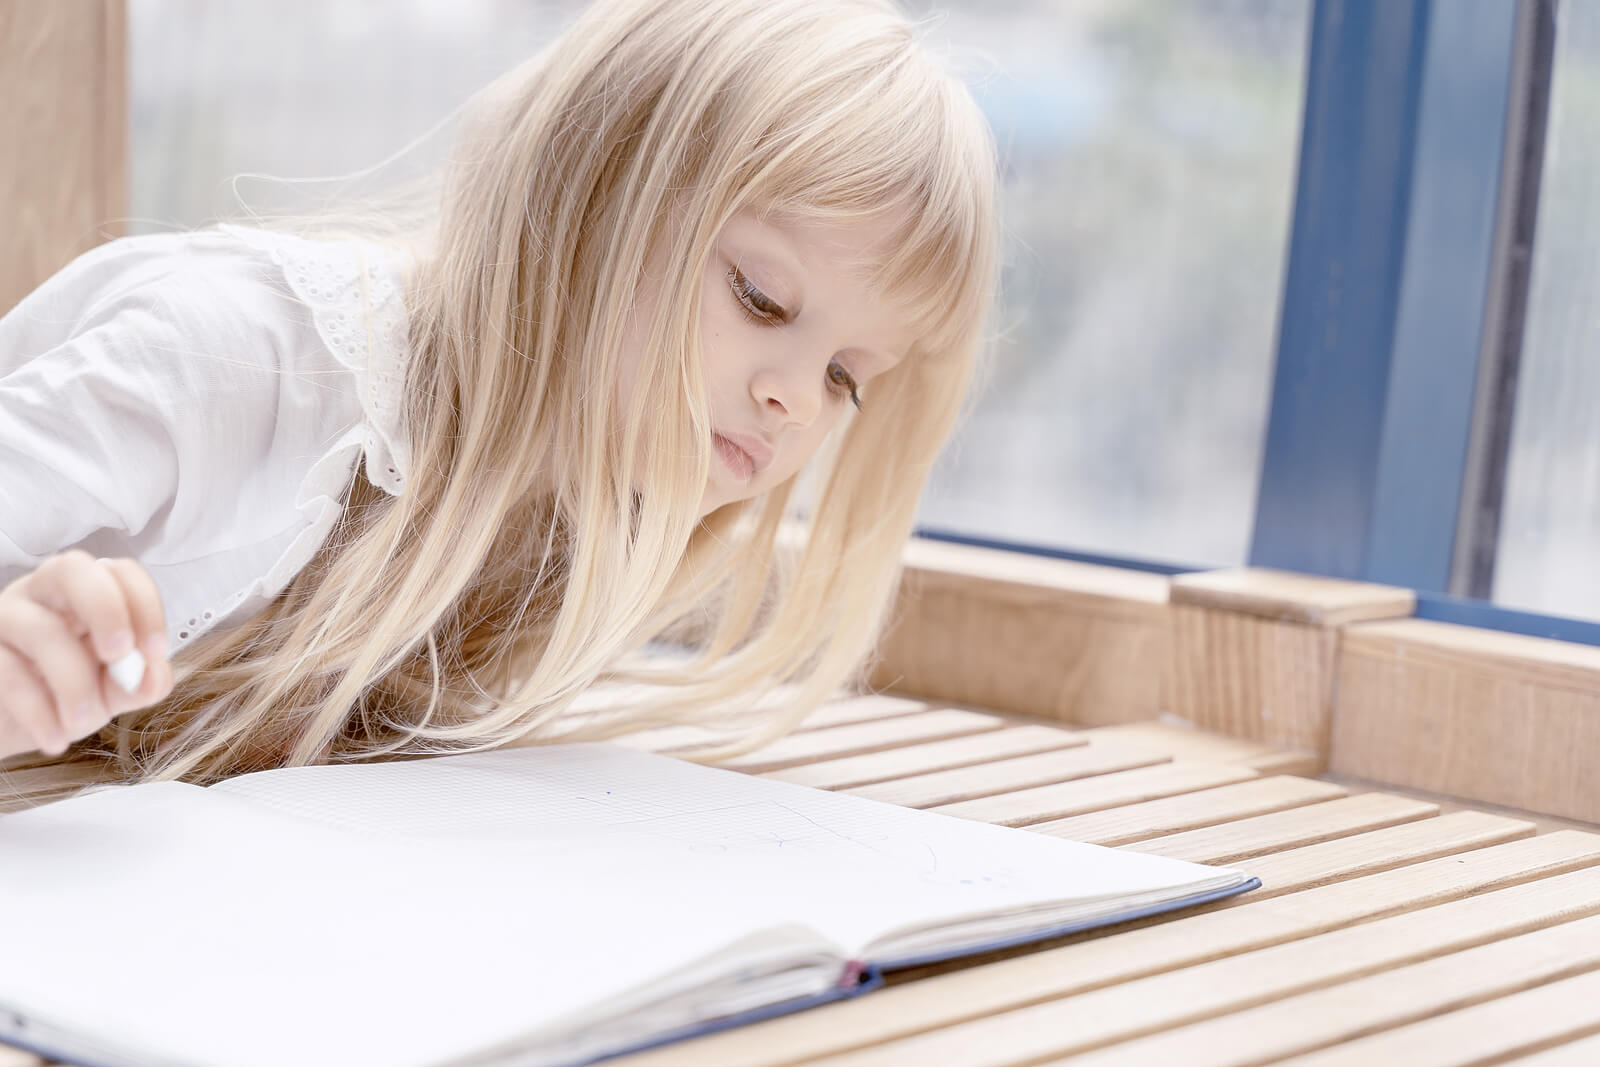 Garota pensando em caligrafia enquanto olha para um notebook.